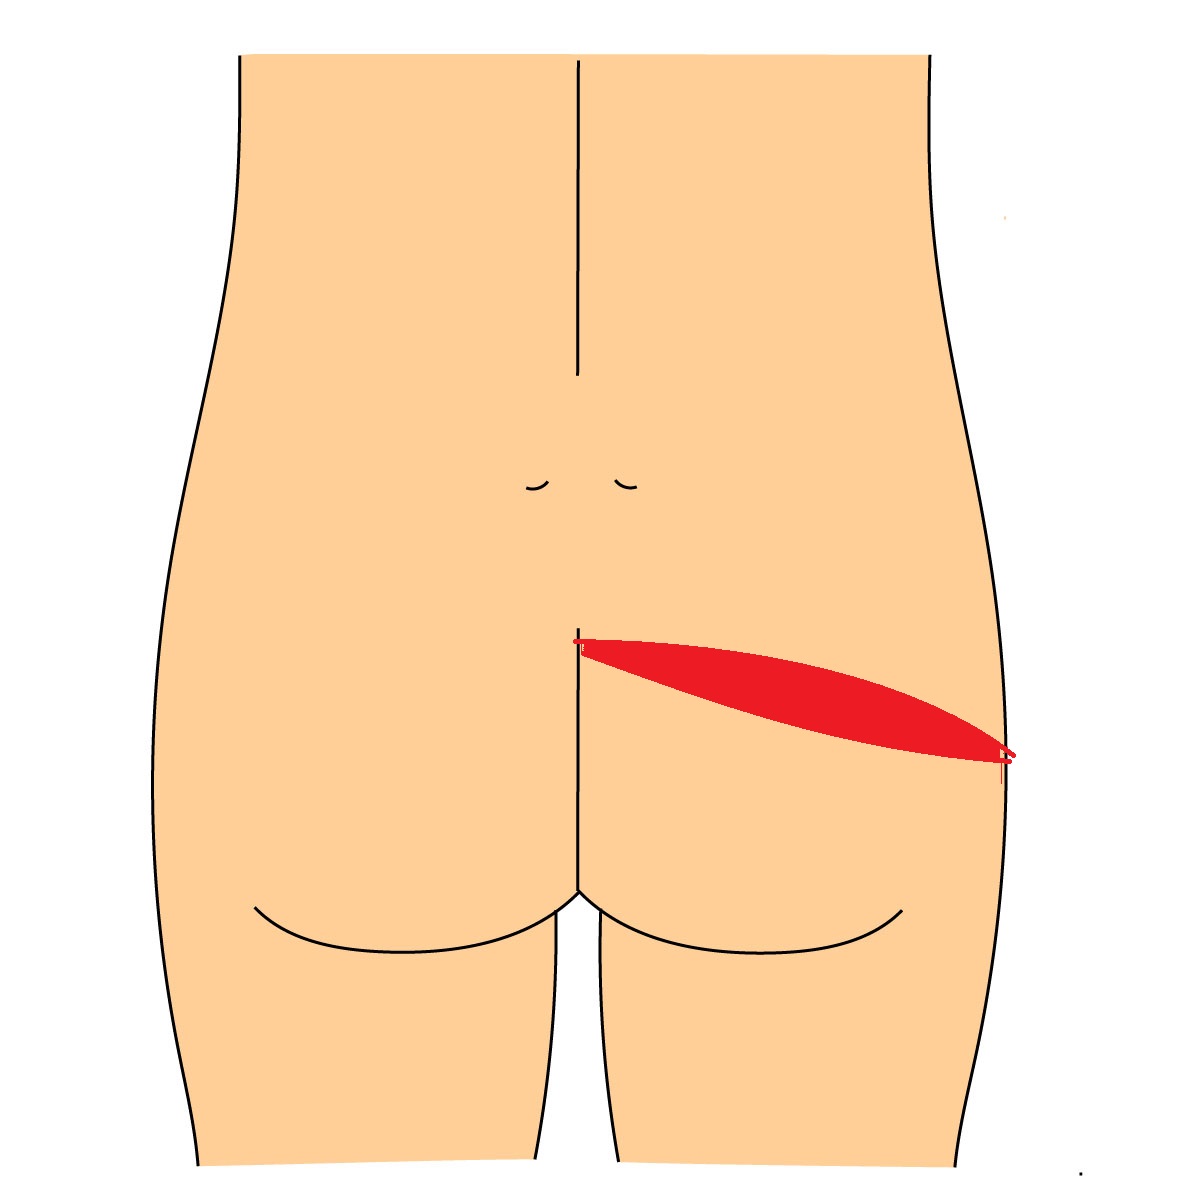 臀部痛　梨状筋症候群　場所の説明　図